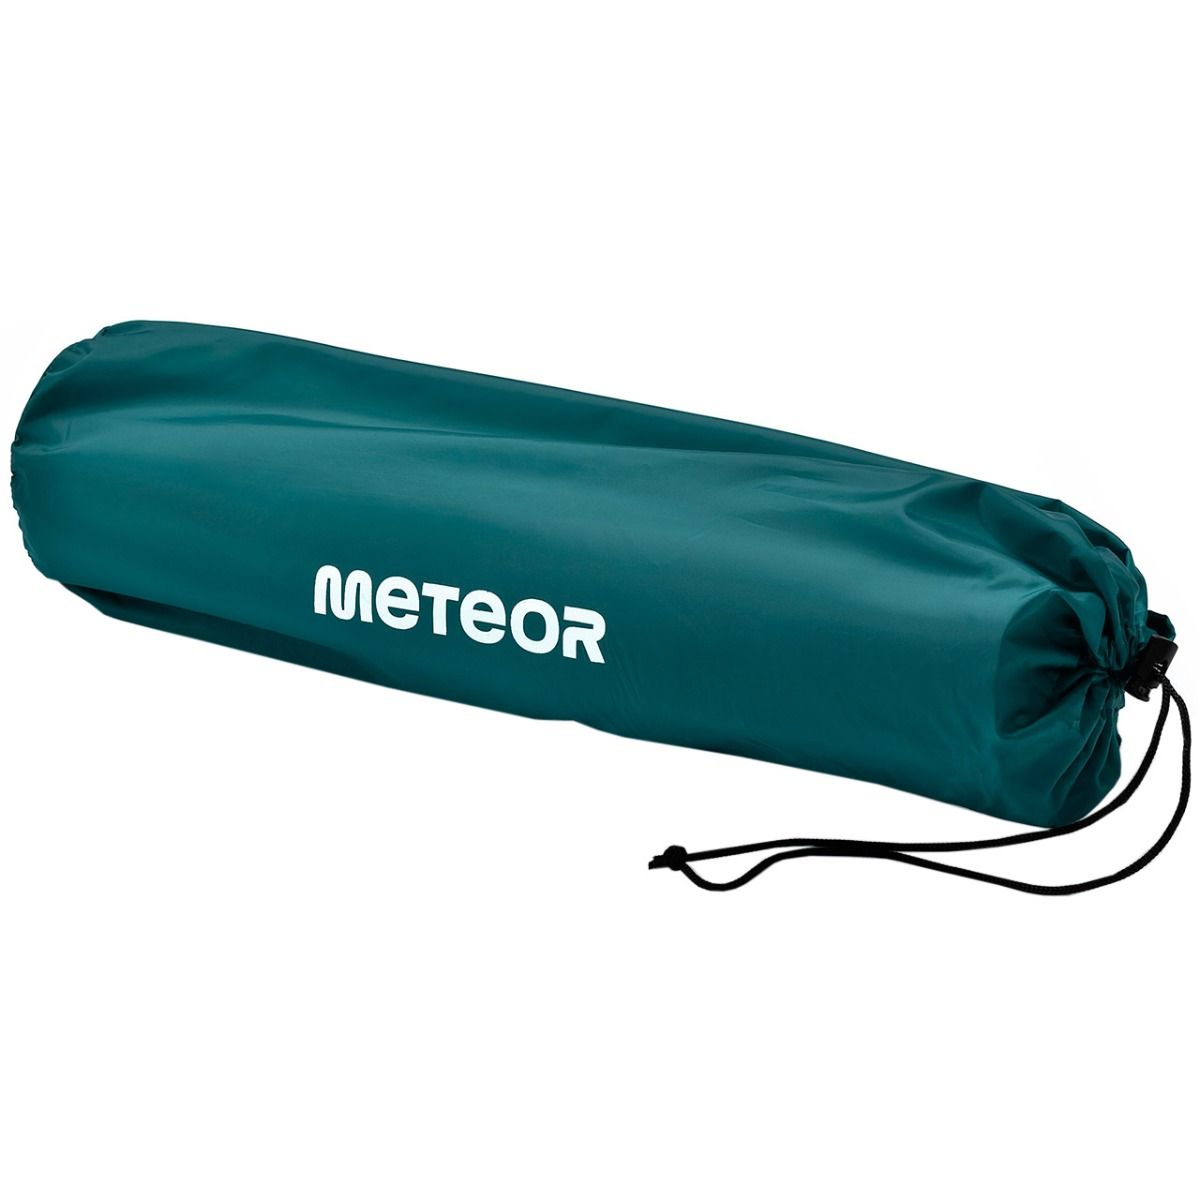 Meteor Matratze 2-in-1 mit Pumpe + Drybag 16441